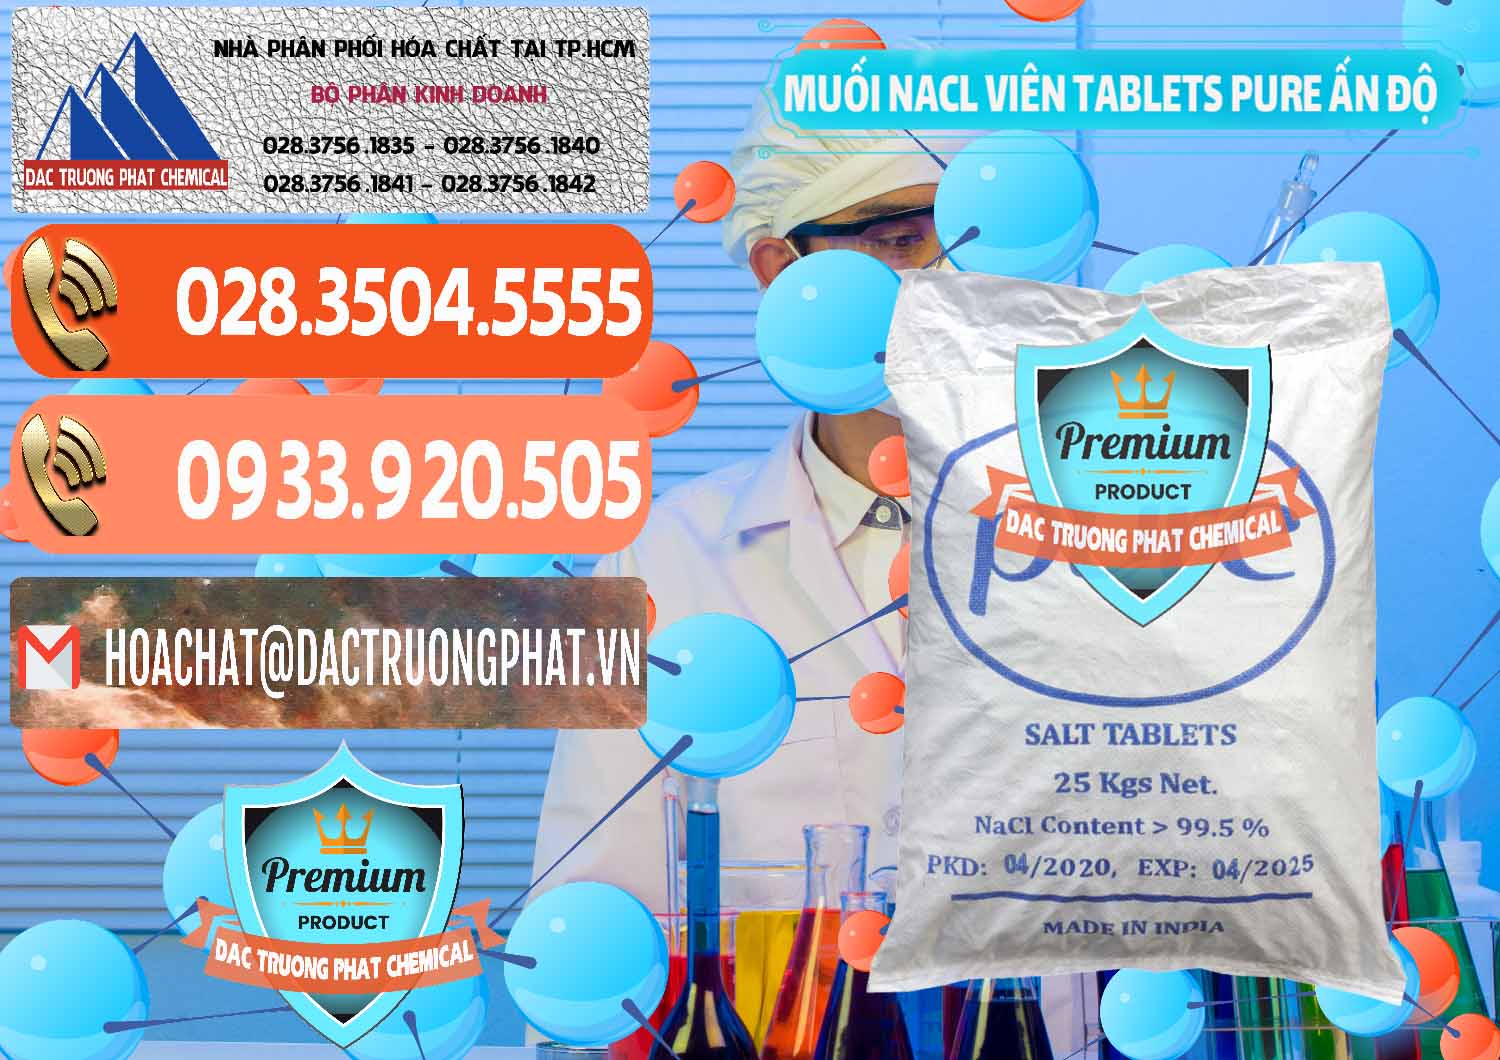 Nơi chuyên bán ( cung cấp ) Muối NaCL – Sodium Chloride Dạng Viên Tablets Pure Ấn Độ India - 0294 - Nhà phân phối - kinh doanh hóa chất tại TP.HCM - hoachatmientay.com